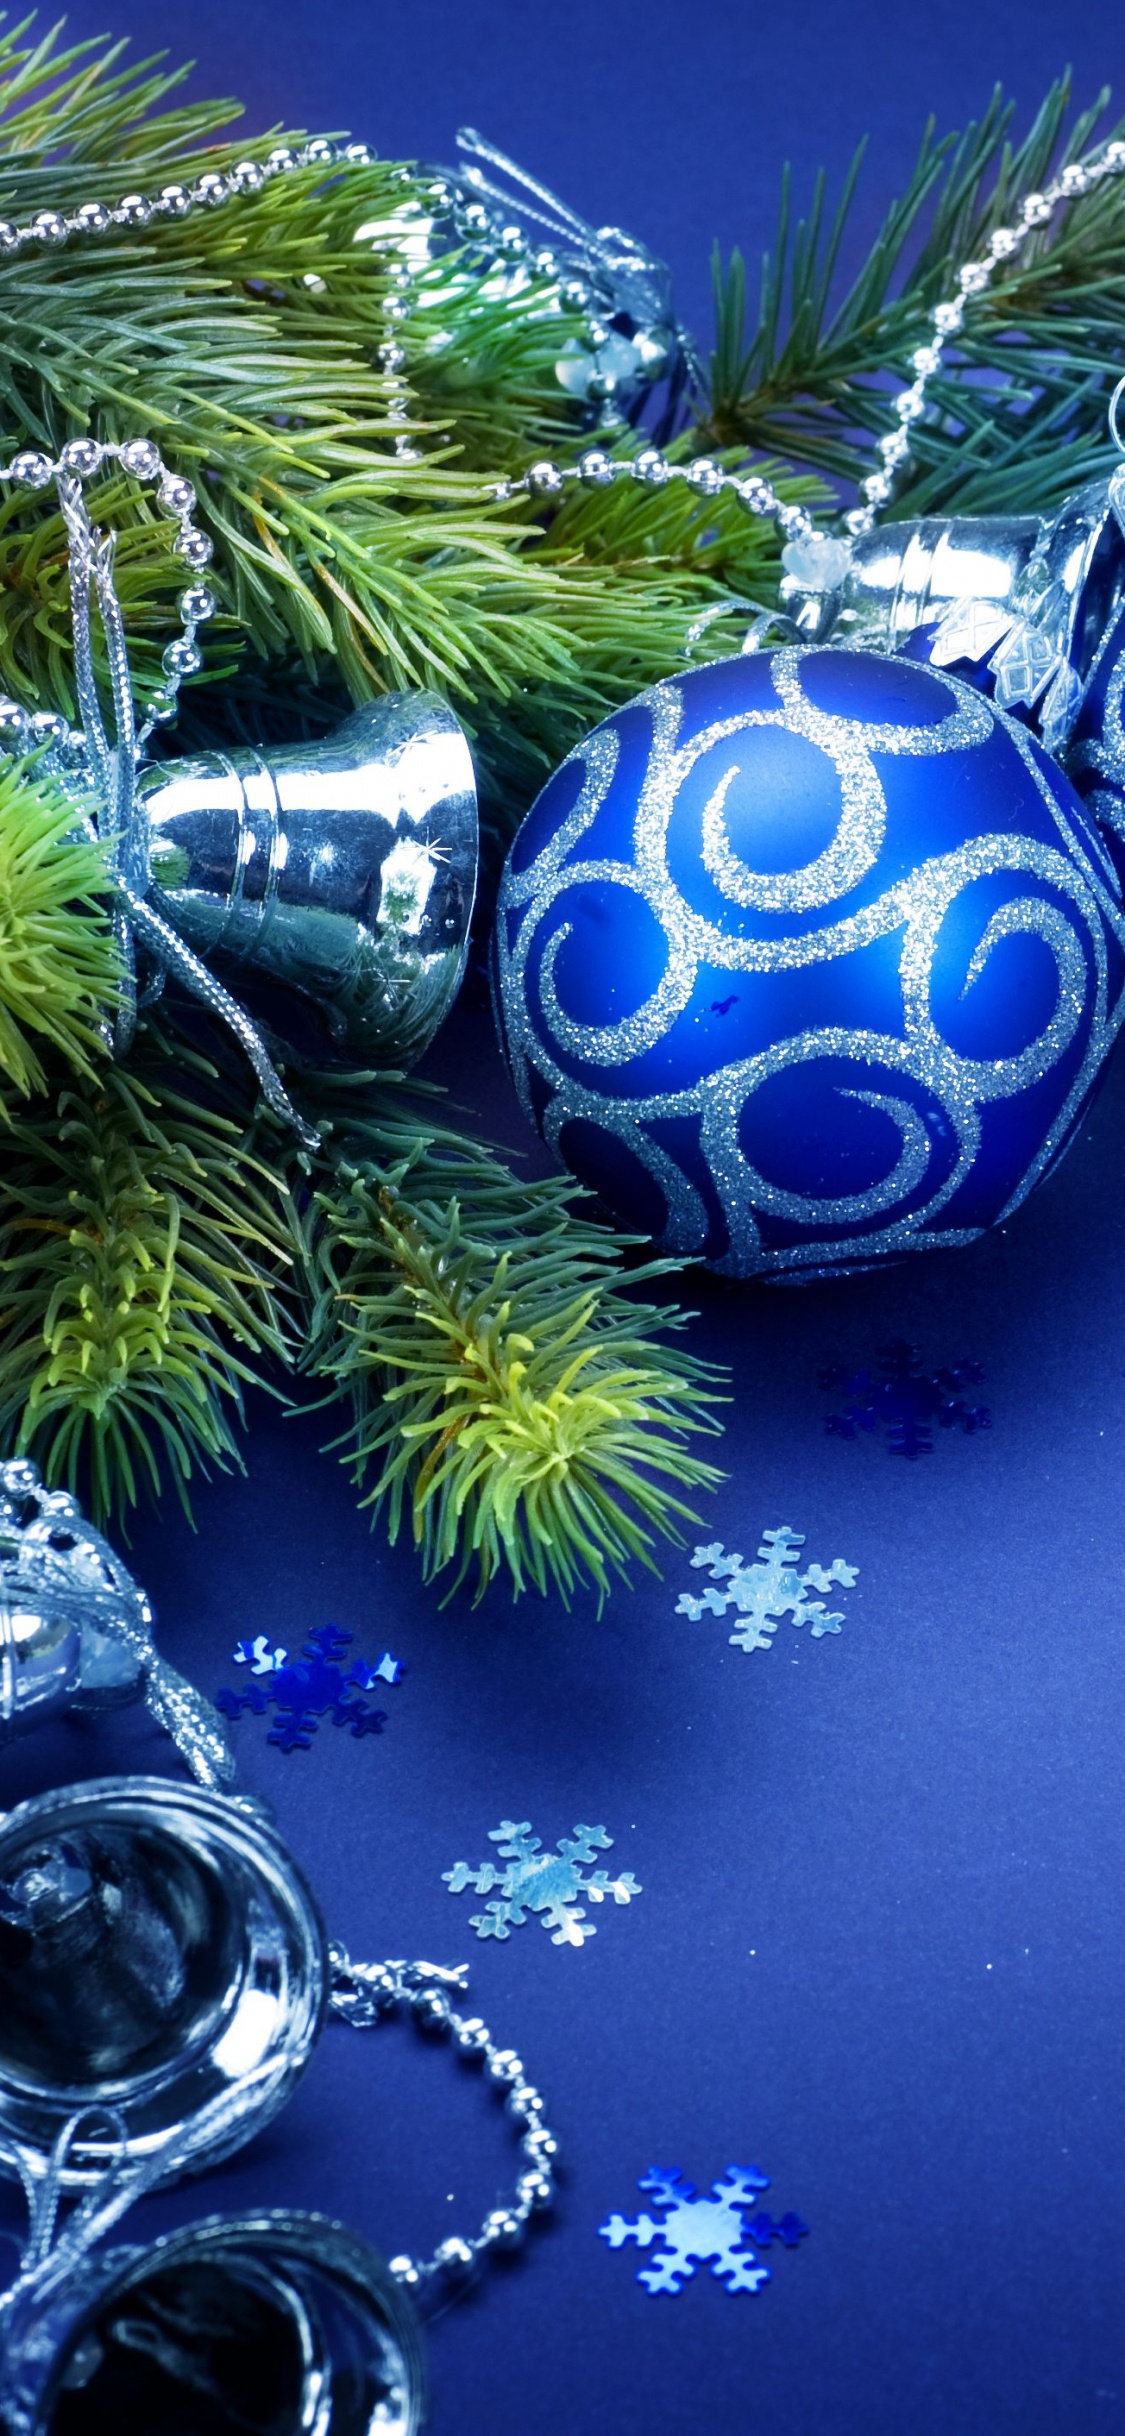 Weihnachten, Christmas Ornament, Blau, Weihnachtsdekoration, Baum. Wallpaper in 1125x2436 Resolution